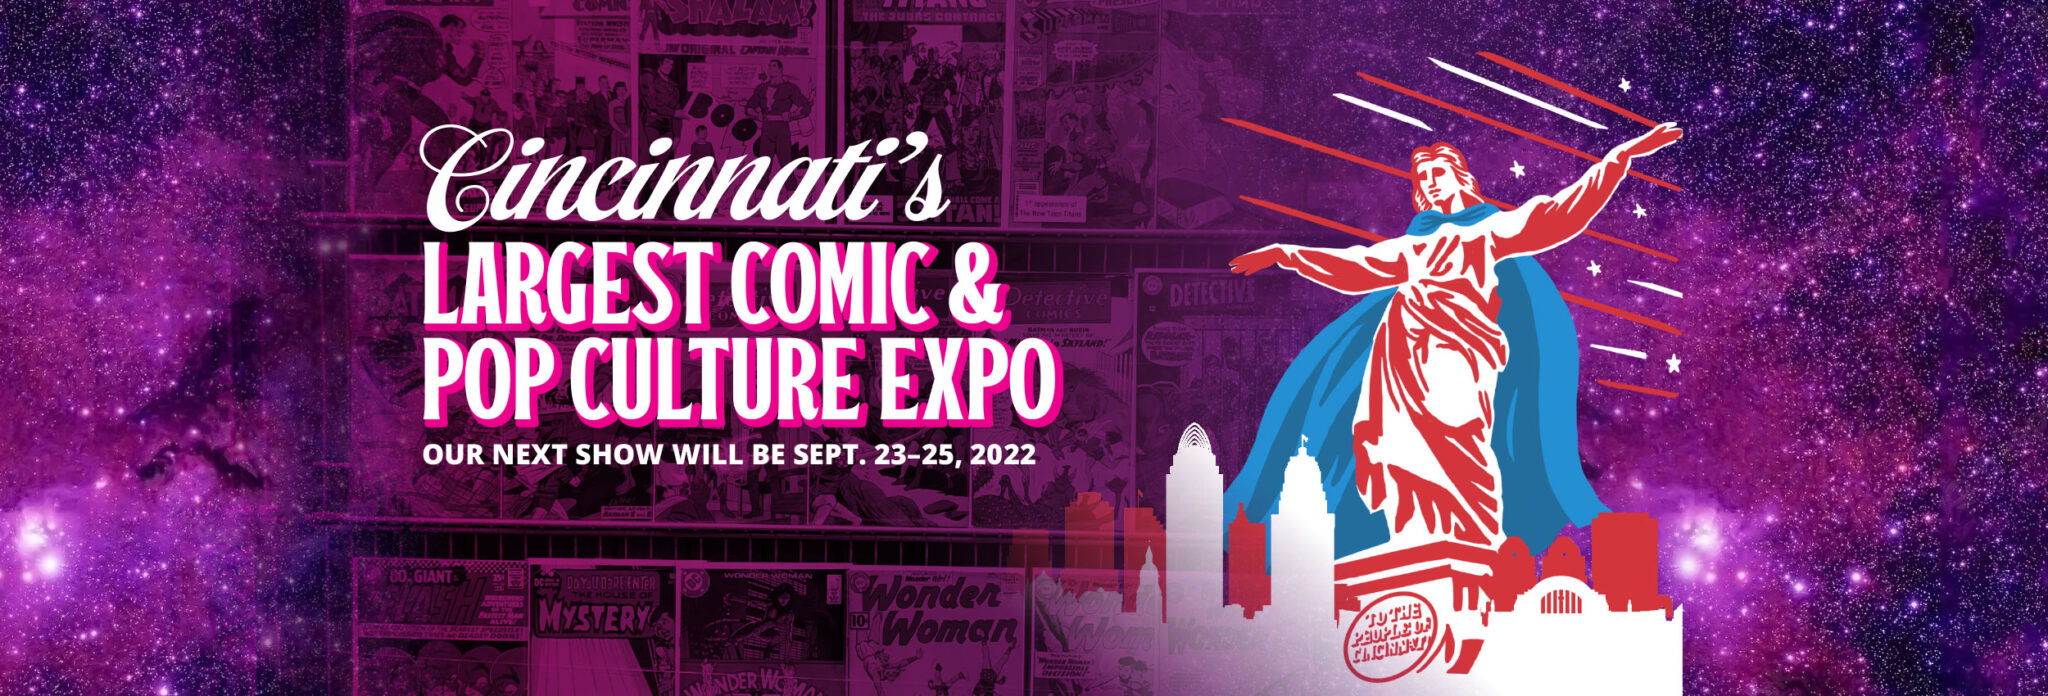 Cincinnati Comic Expo Largest Comic and Pop Culture Expo